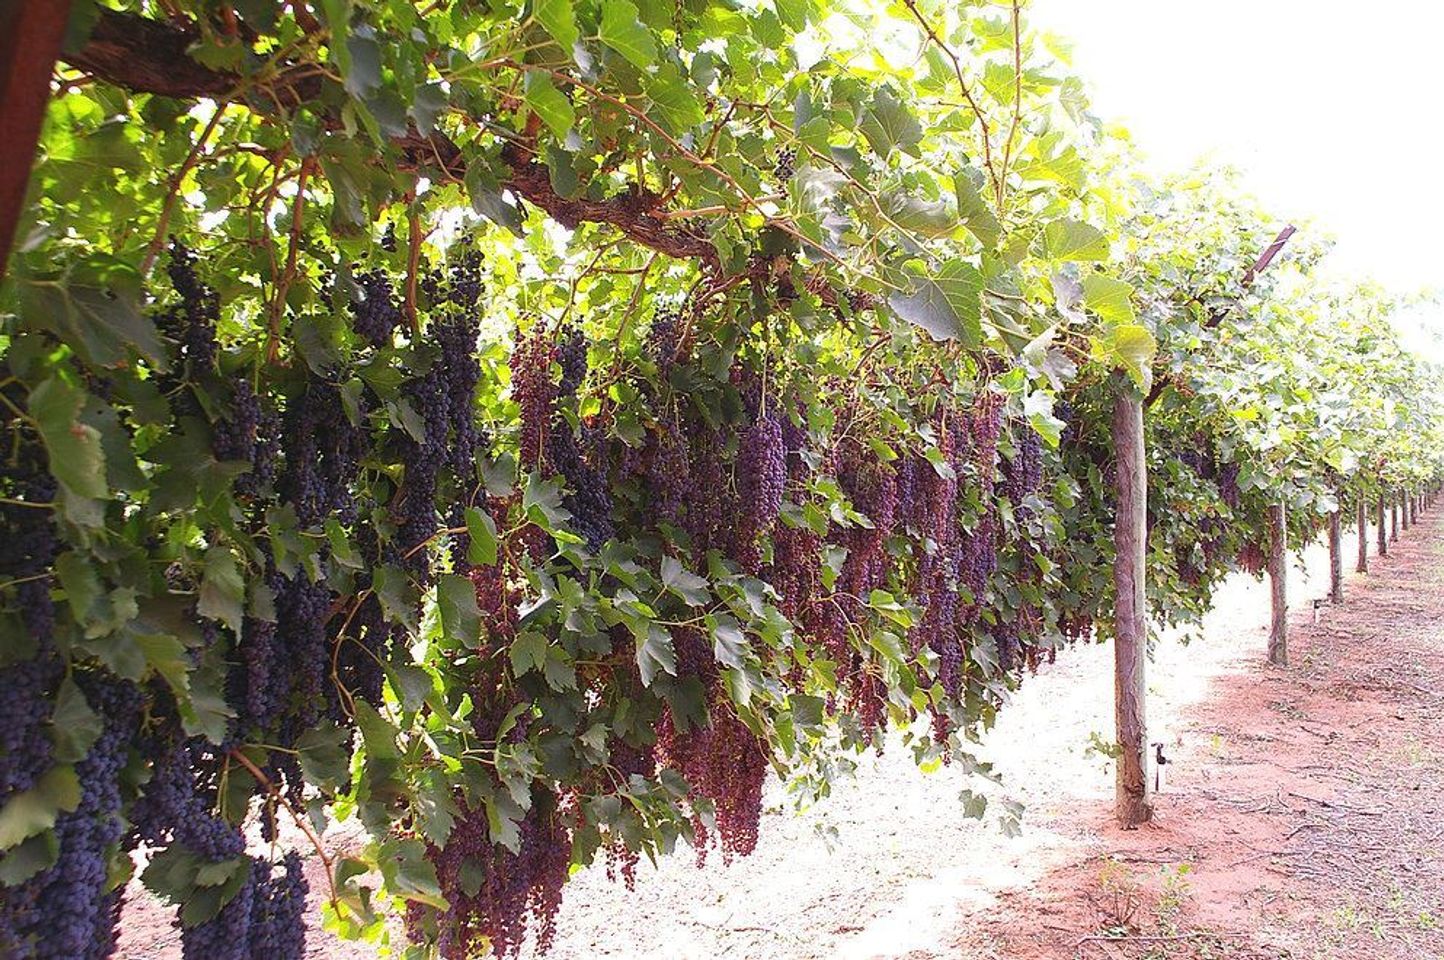 Nho dùng để sản xuất nho khô thường là các giống Raisins, Sultanas hay Currants. Các giống này quả nhỏ, ngọt, màu đỏ hoặc đen